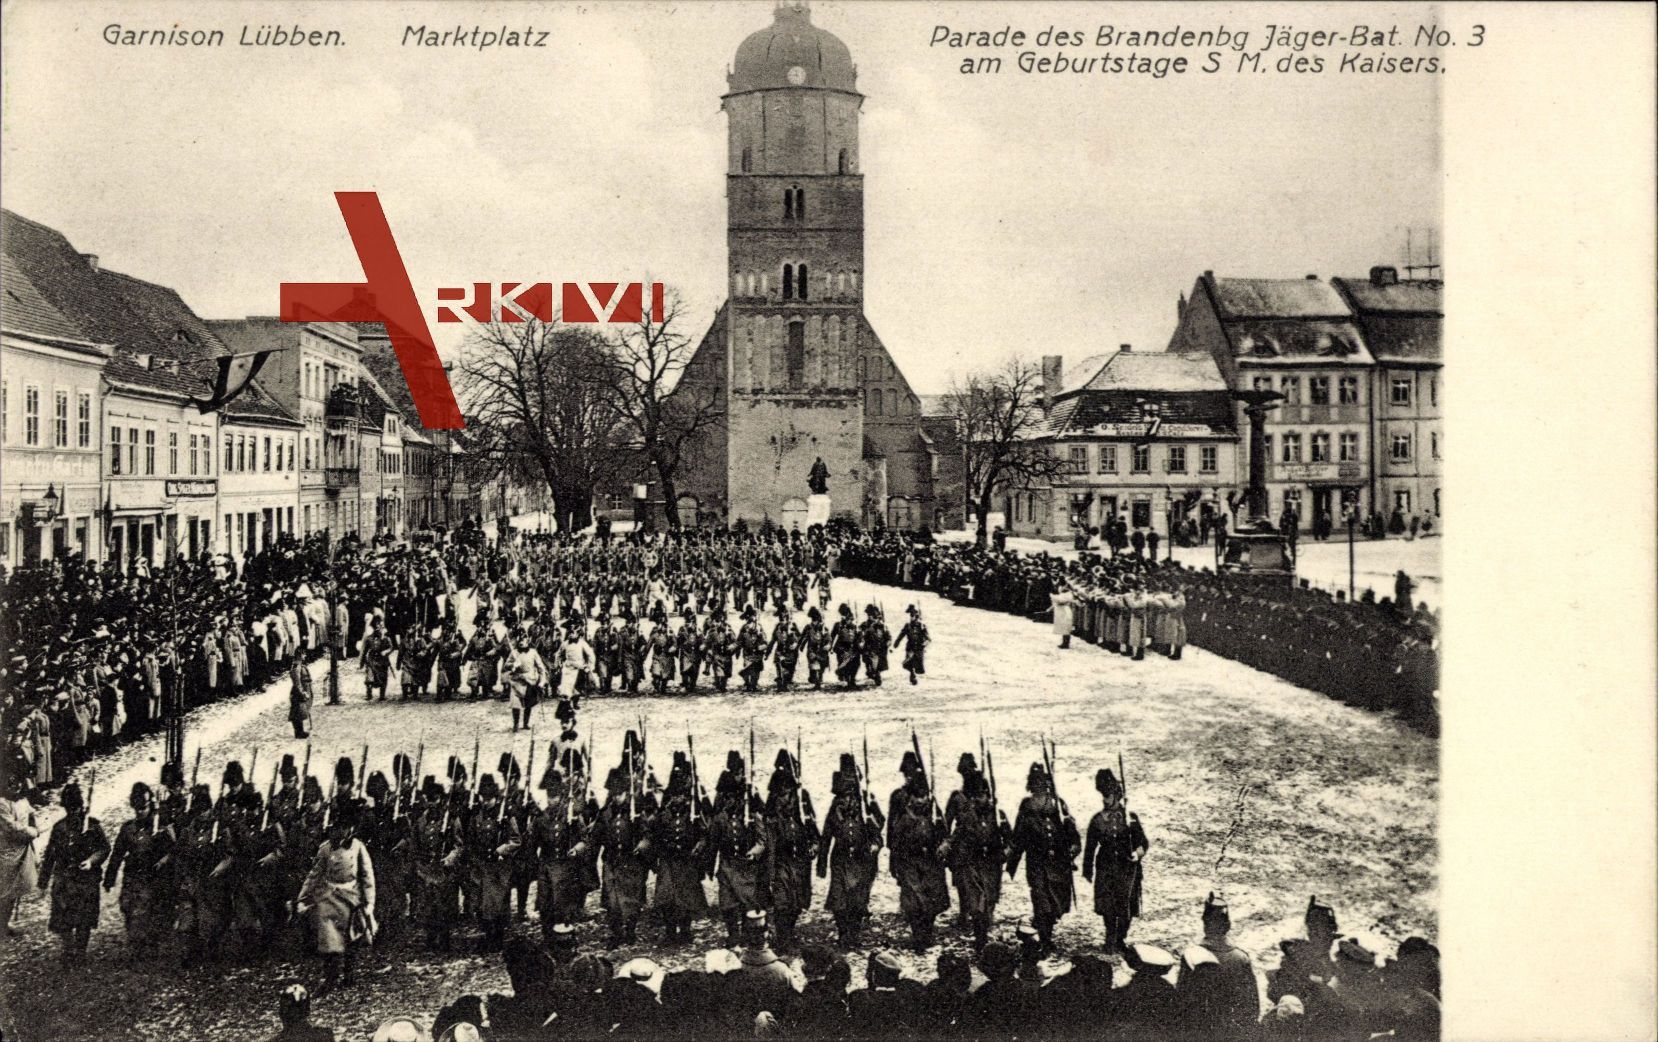 Regiment Lübben im Spreewald, Parade des Brandenbg. Jäger Bat. No. 3,Garnison